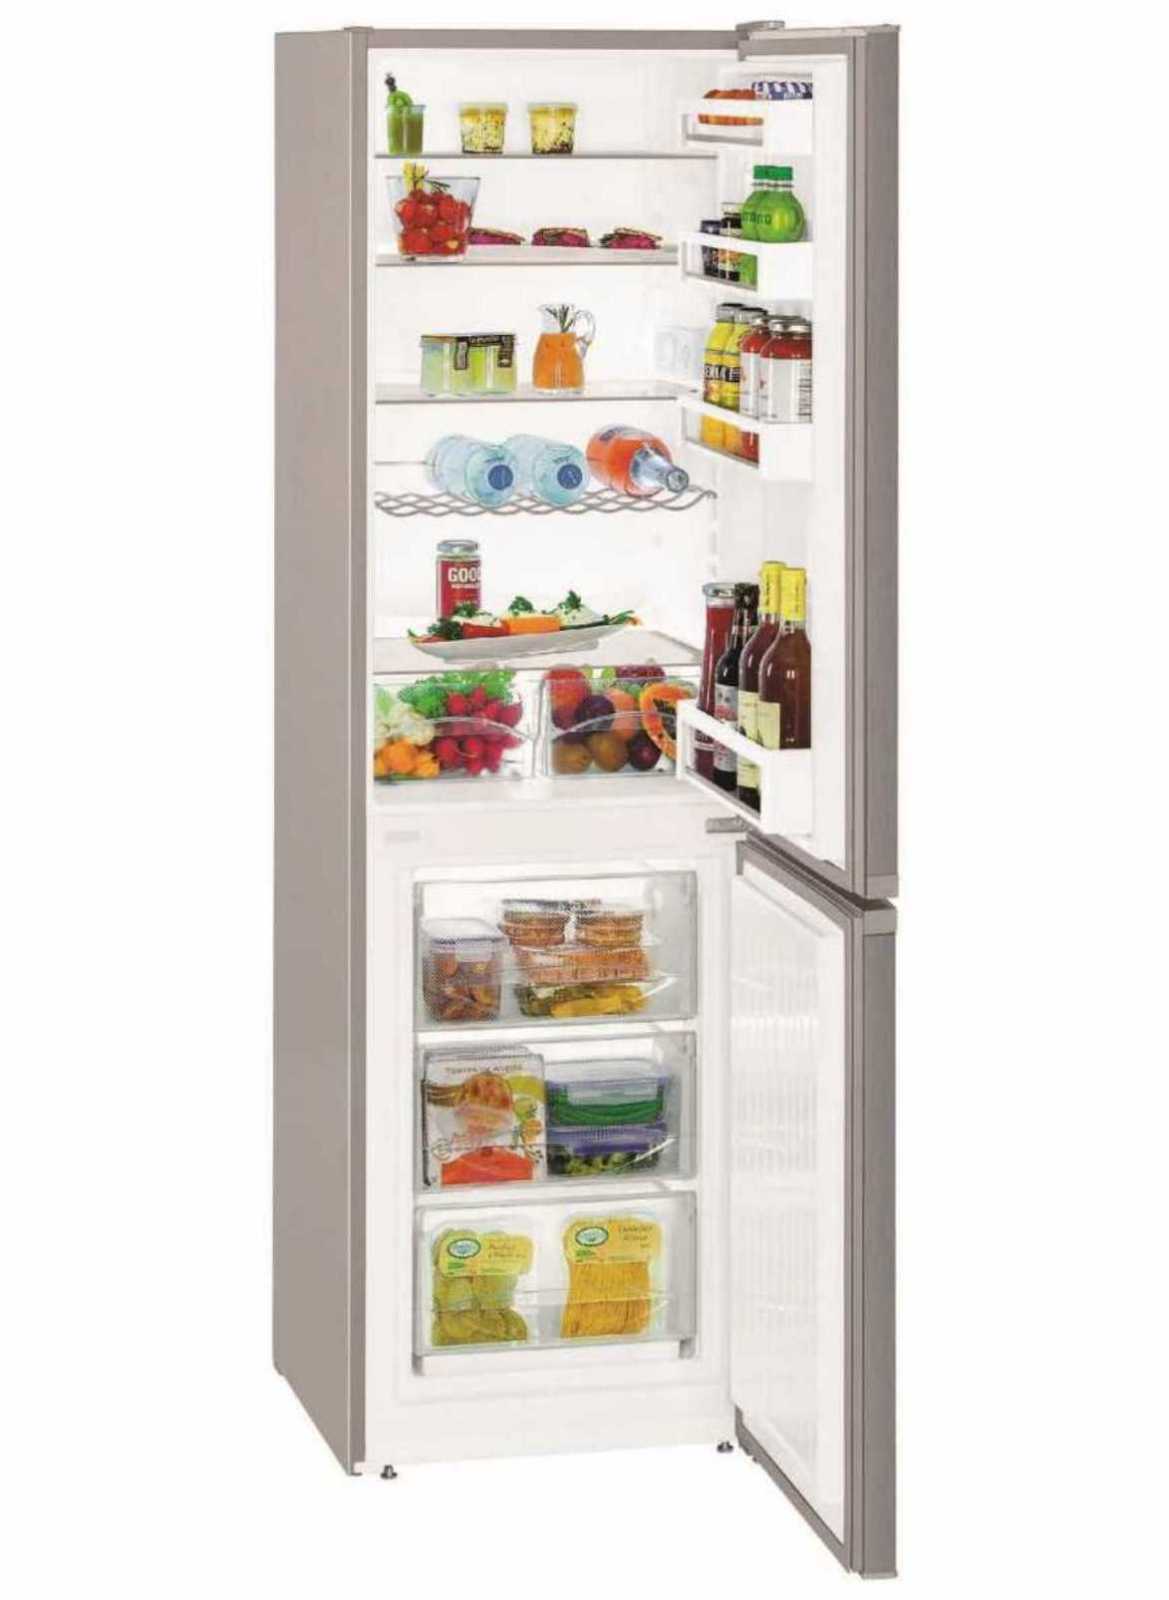 Самая холодная полка в двухкамерном холодильнике